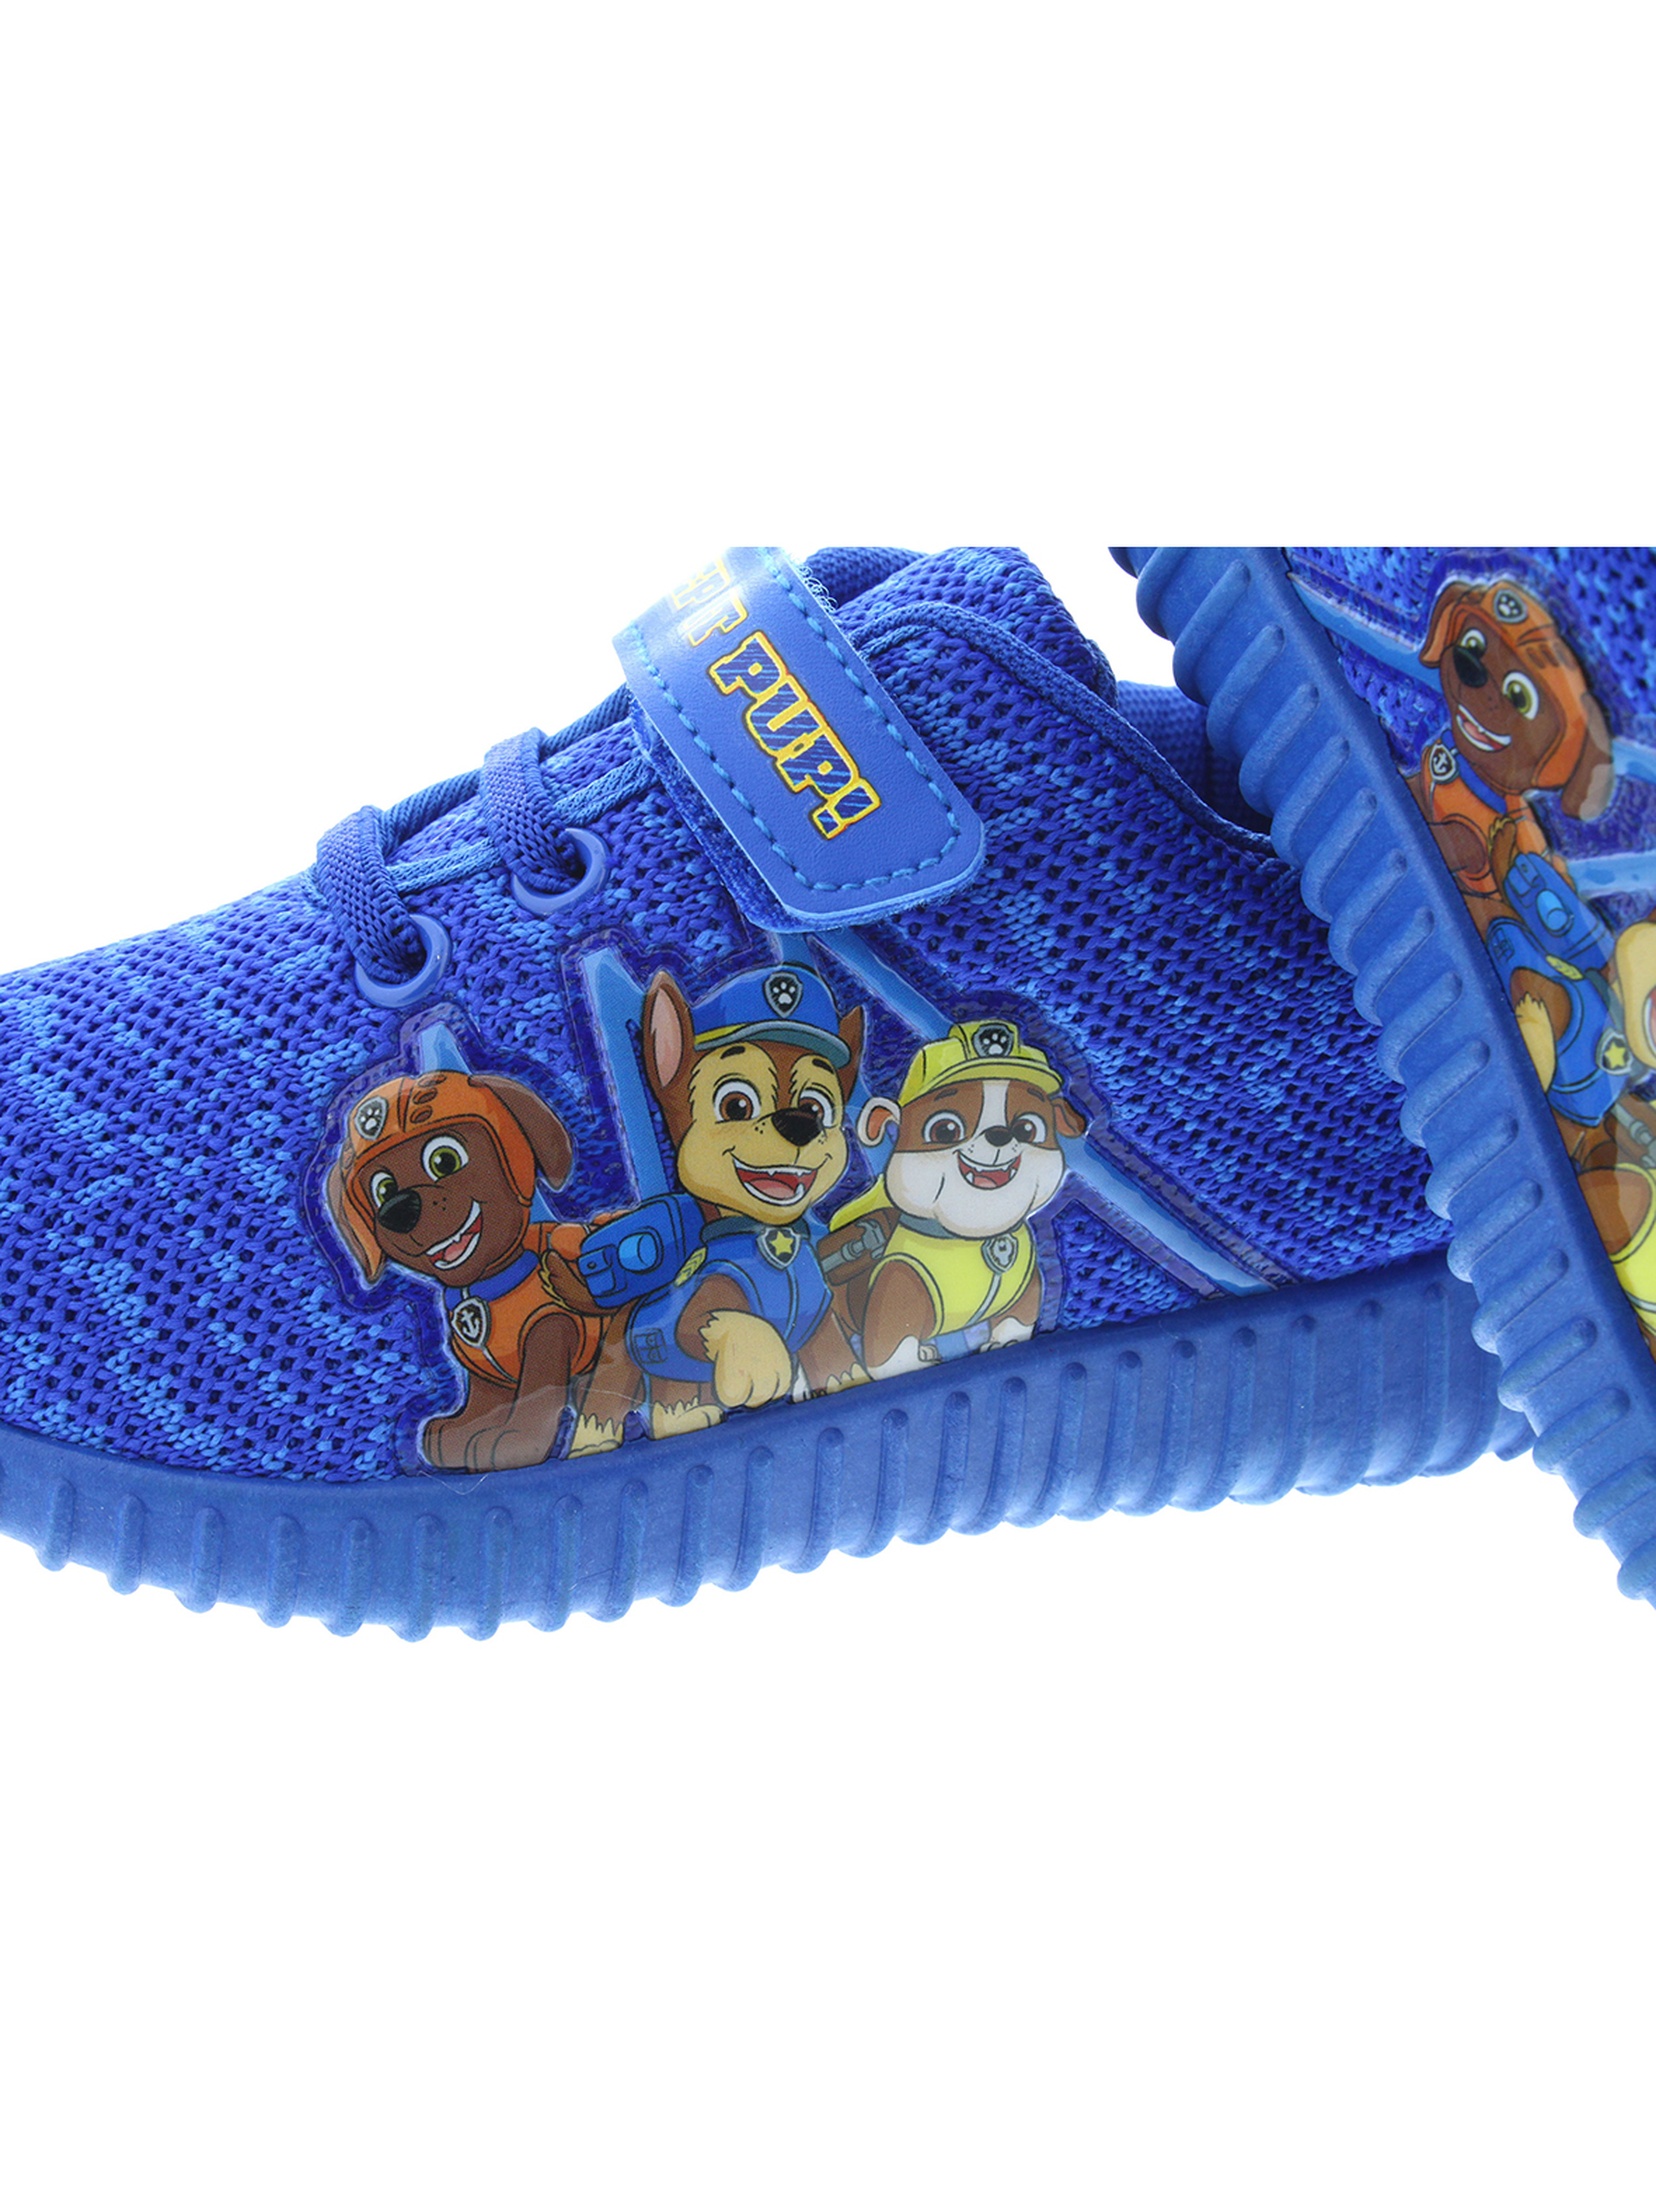 Niebieskie buty sportowe dla chłopca na rzep - PSI PATROL